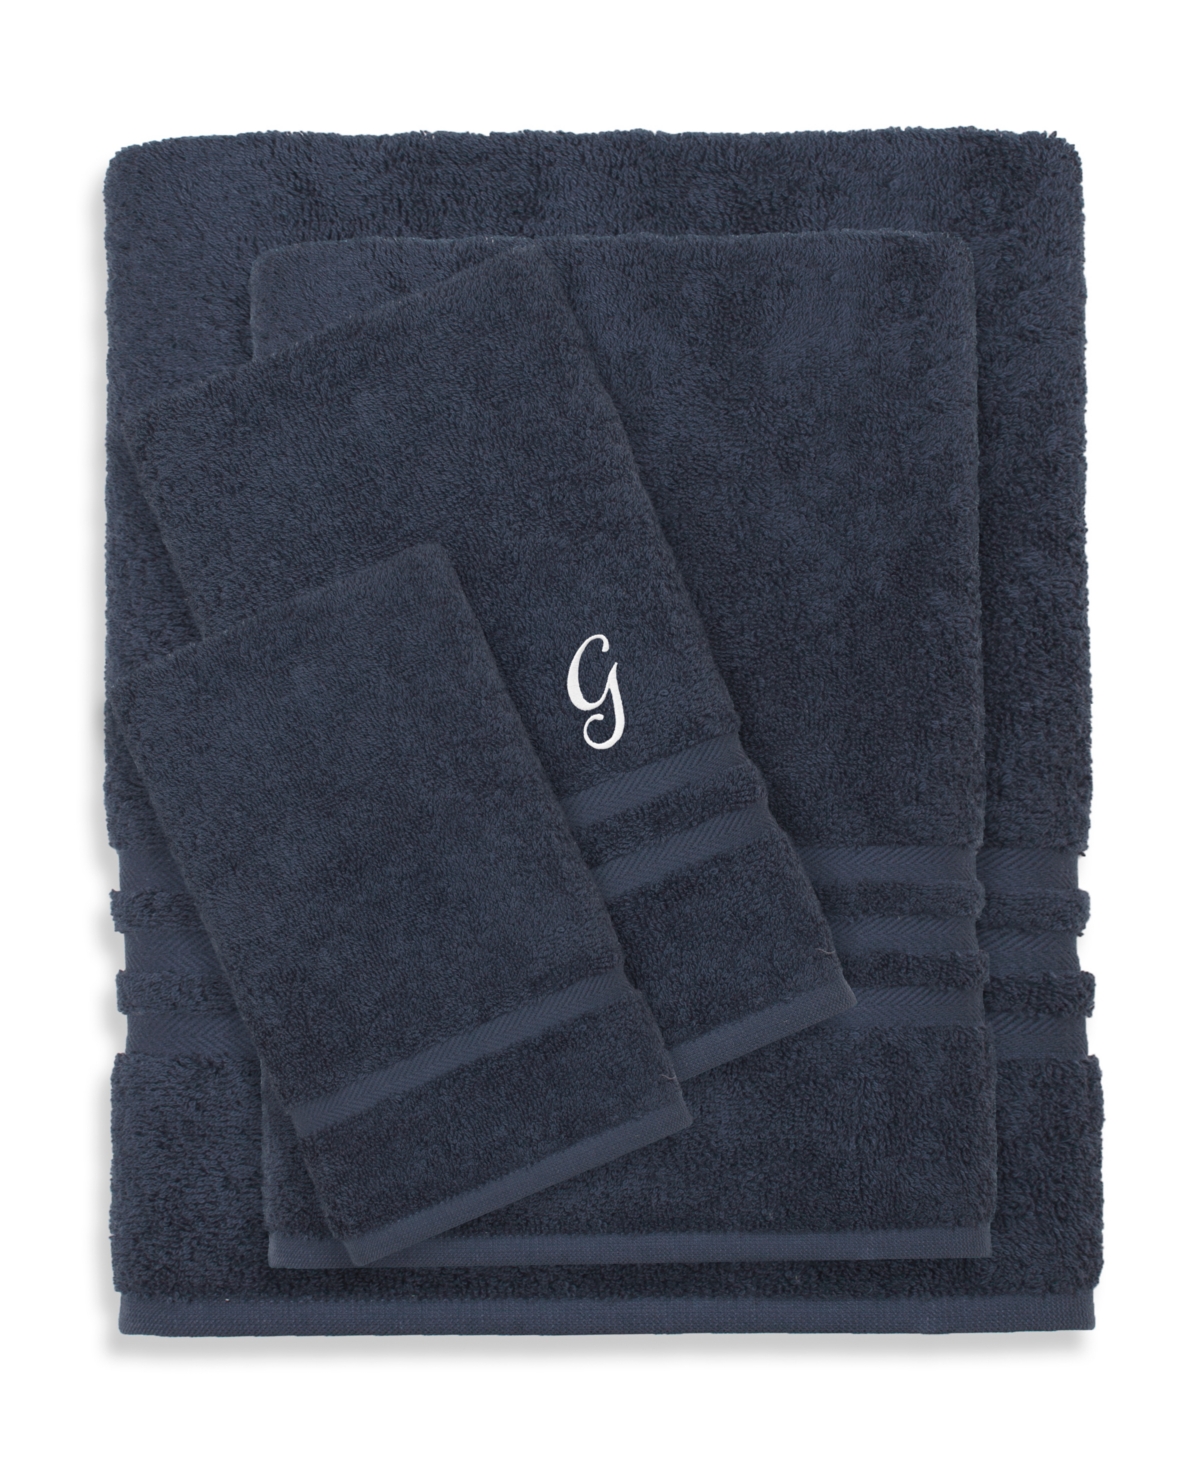 Linum Home Textiles Turkish Cotton Personalized Denzi Towel Set, 4 Piece Bedding In Blue